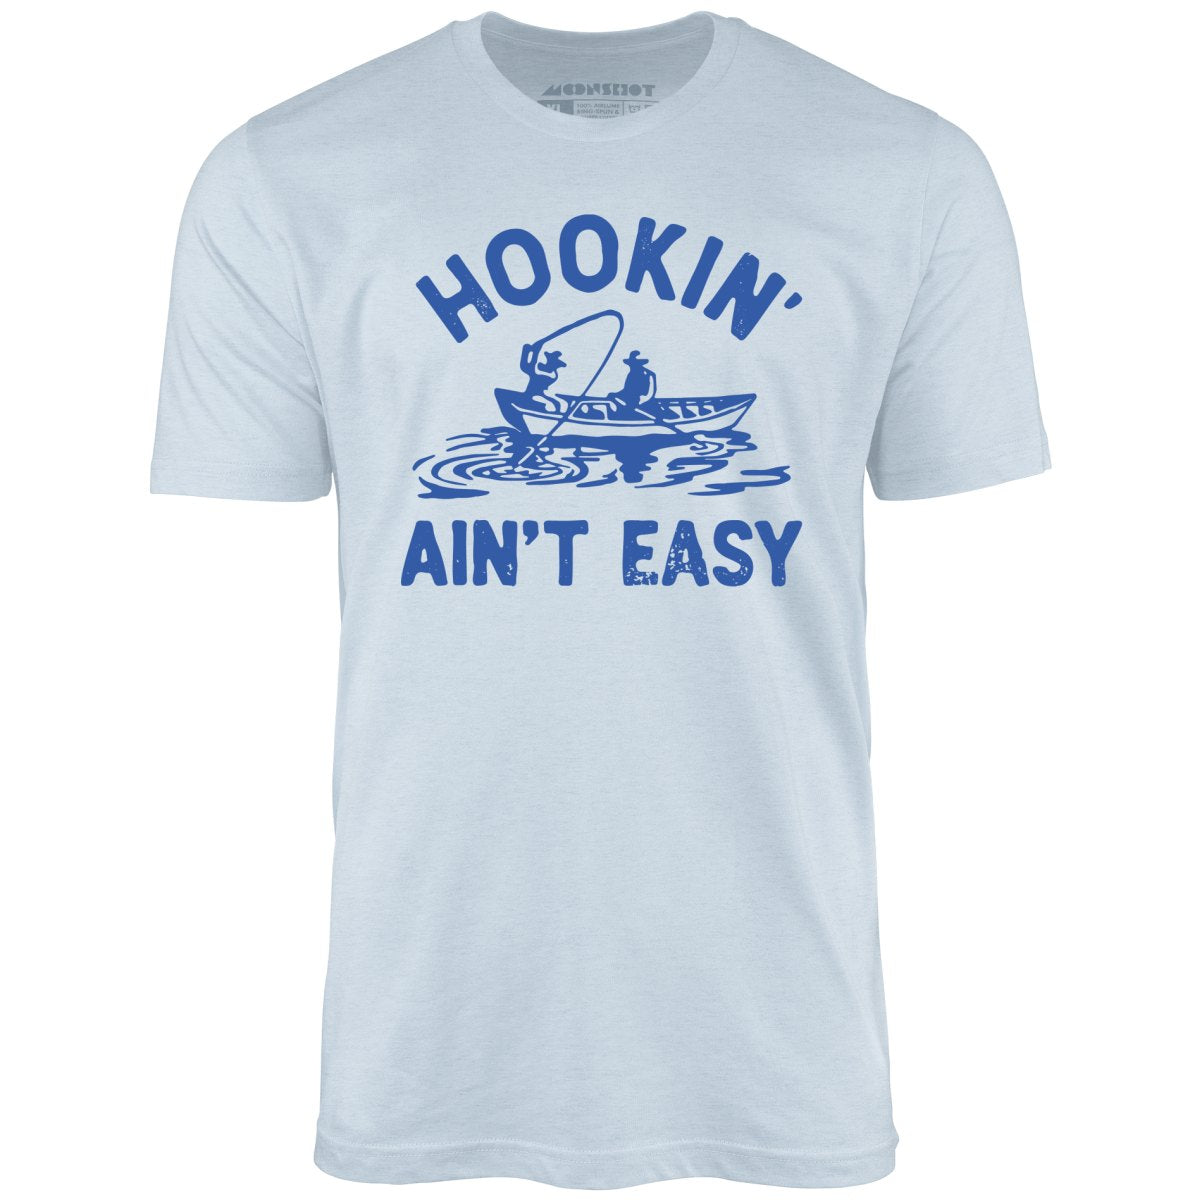 Hookin' Ain't Easy - Unisex T-Shirt